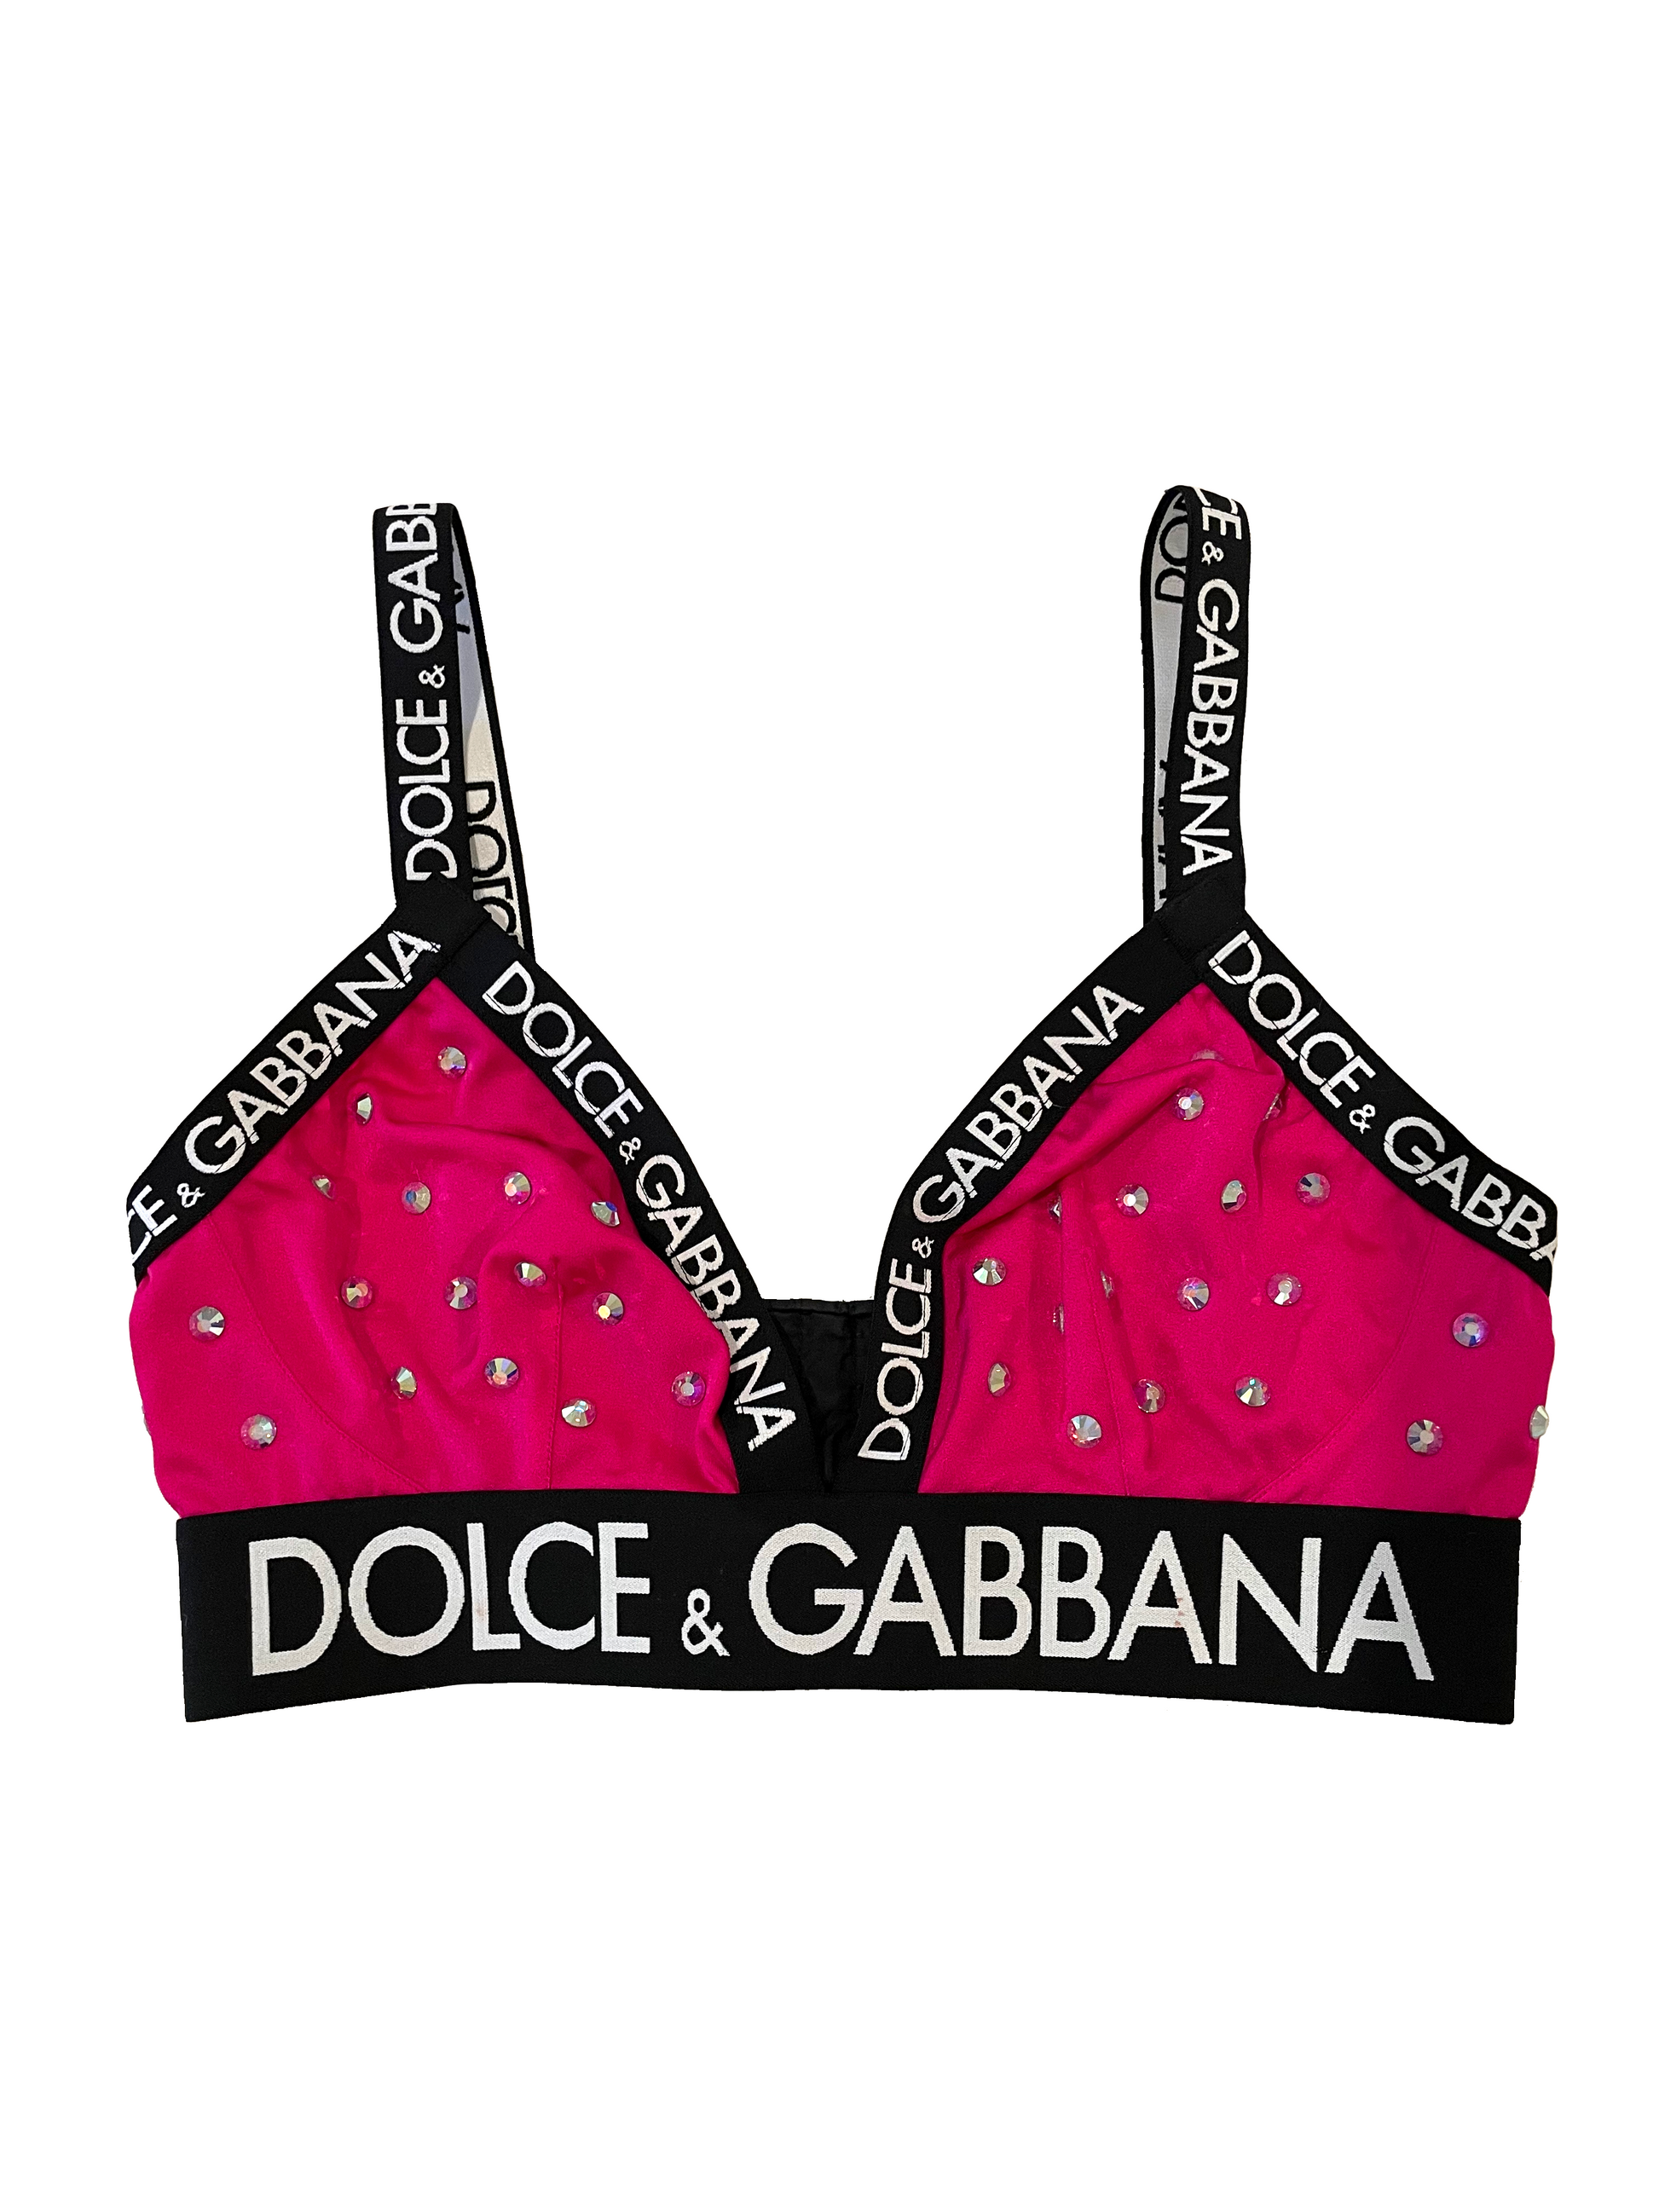 DOLCE GABBANA Y2K Vintage Pink Floral Padded Bra / Flower Print Designer  Bralette / Dolce Gabbana Feminine Floral Lingerie / Size 34 B -  Finland